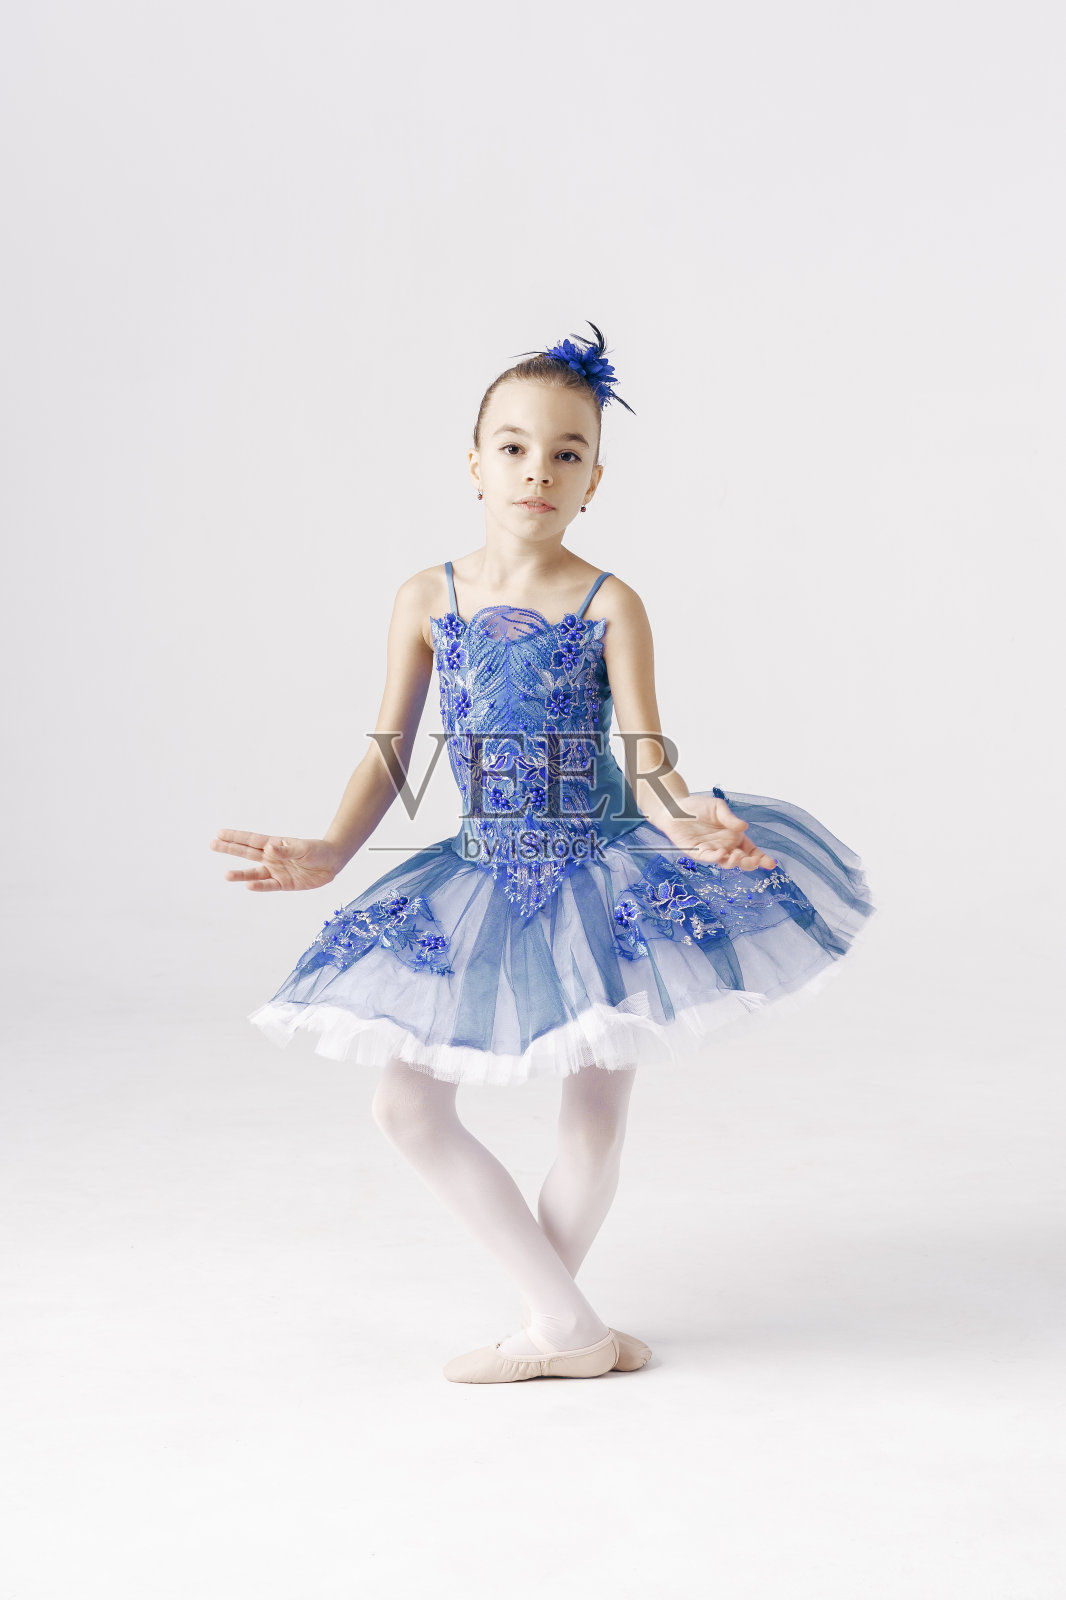 芭蕾舞少女童话般的美丽在白色的背景照片摄影图片